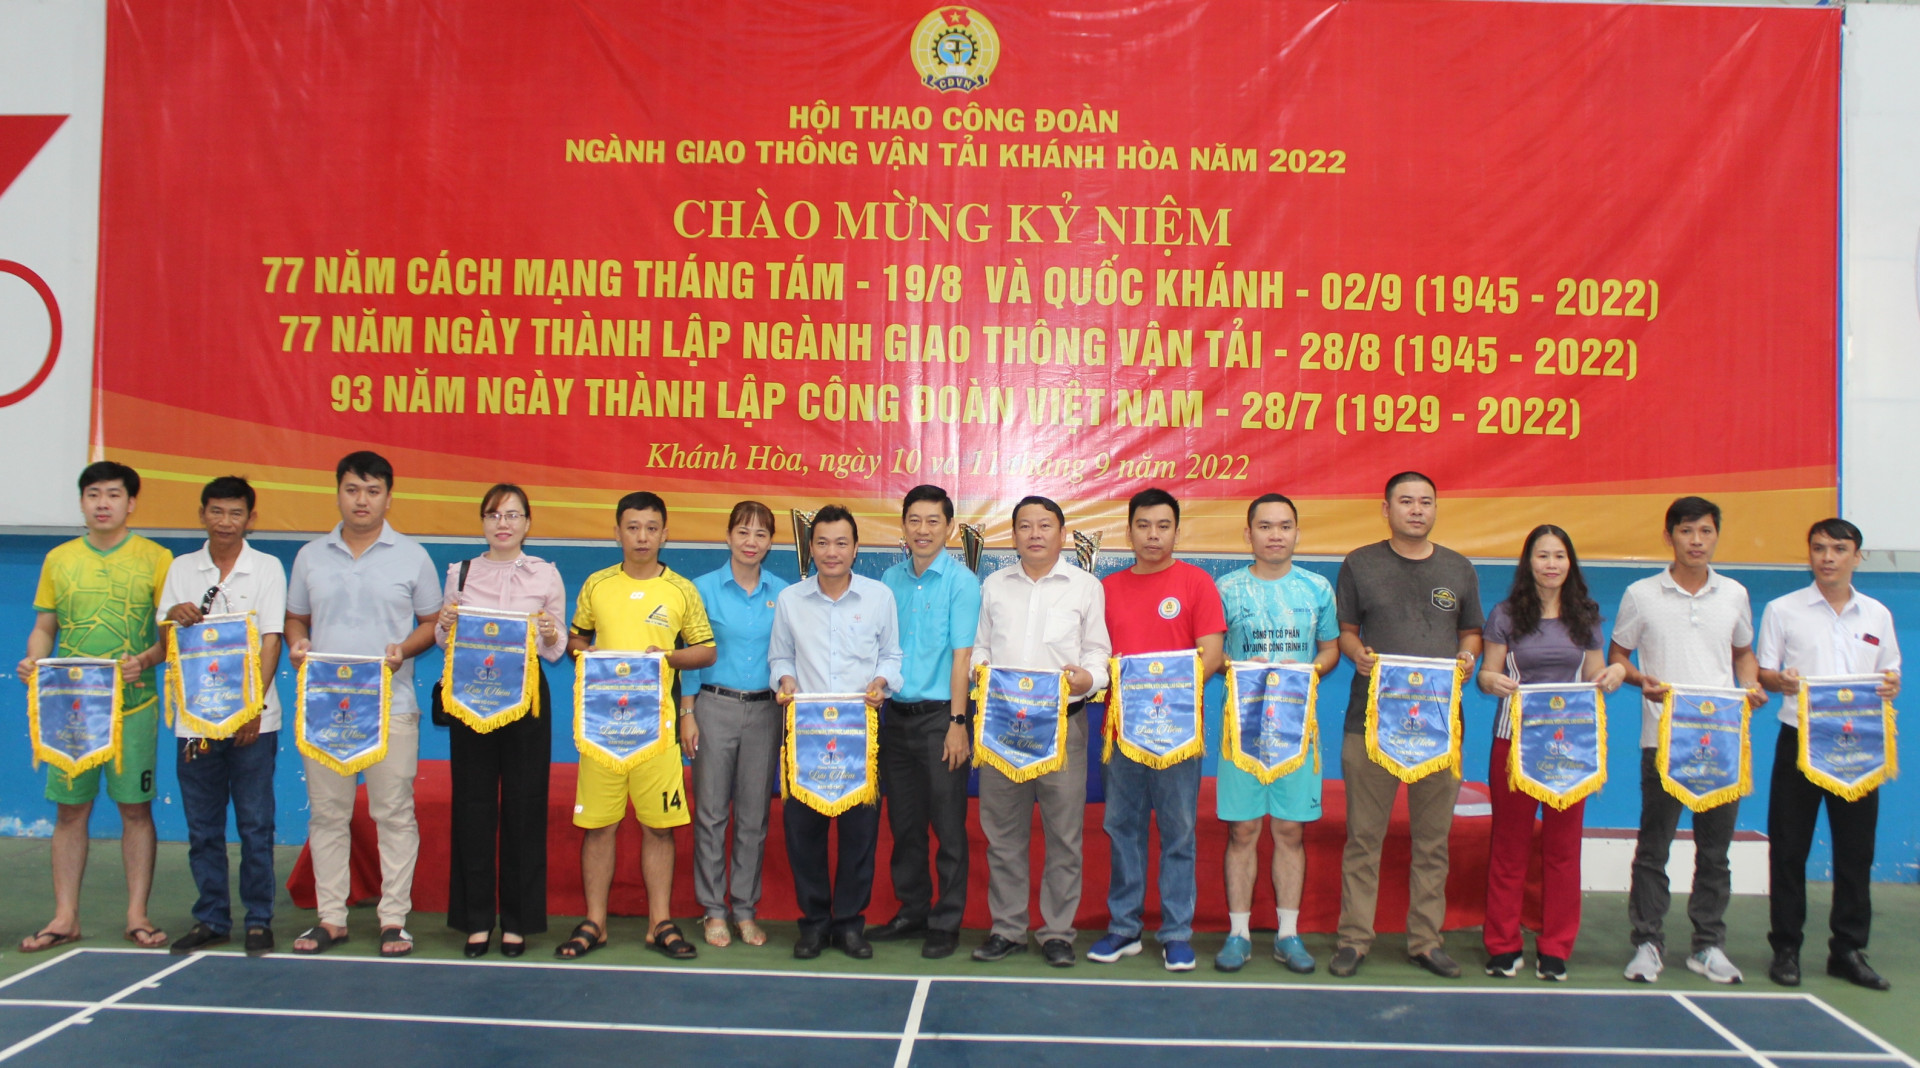 Ban tổ chức trao cờ lưu niệm cho các đội tham gia hội thao.